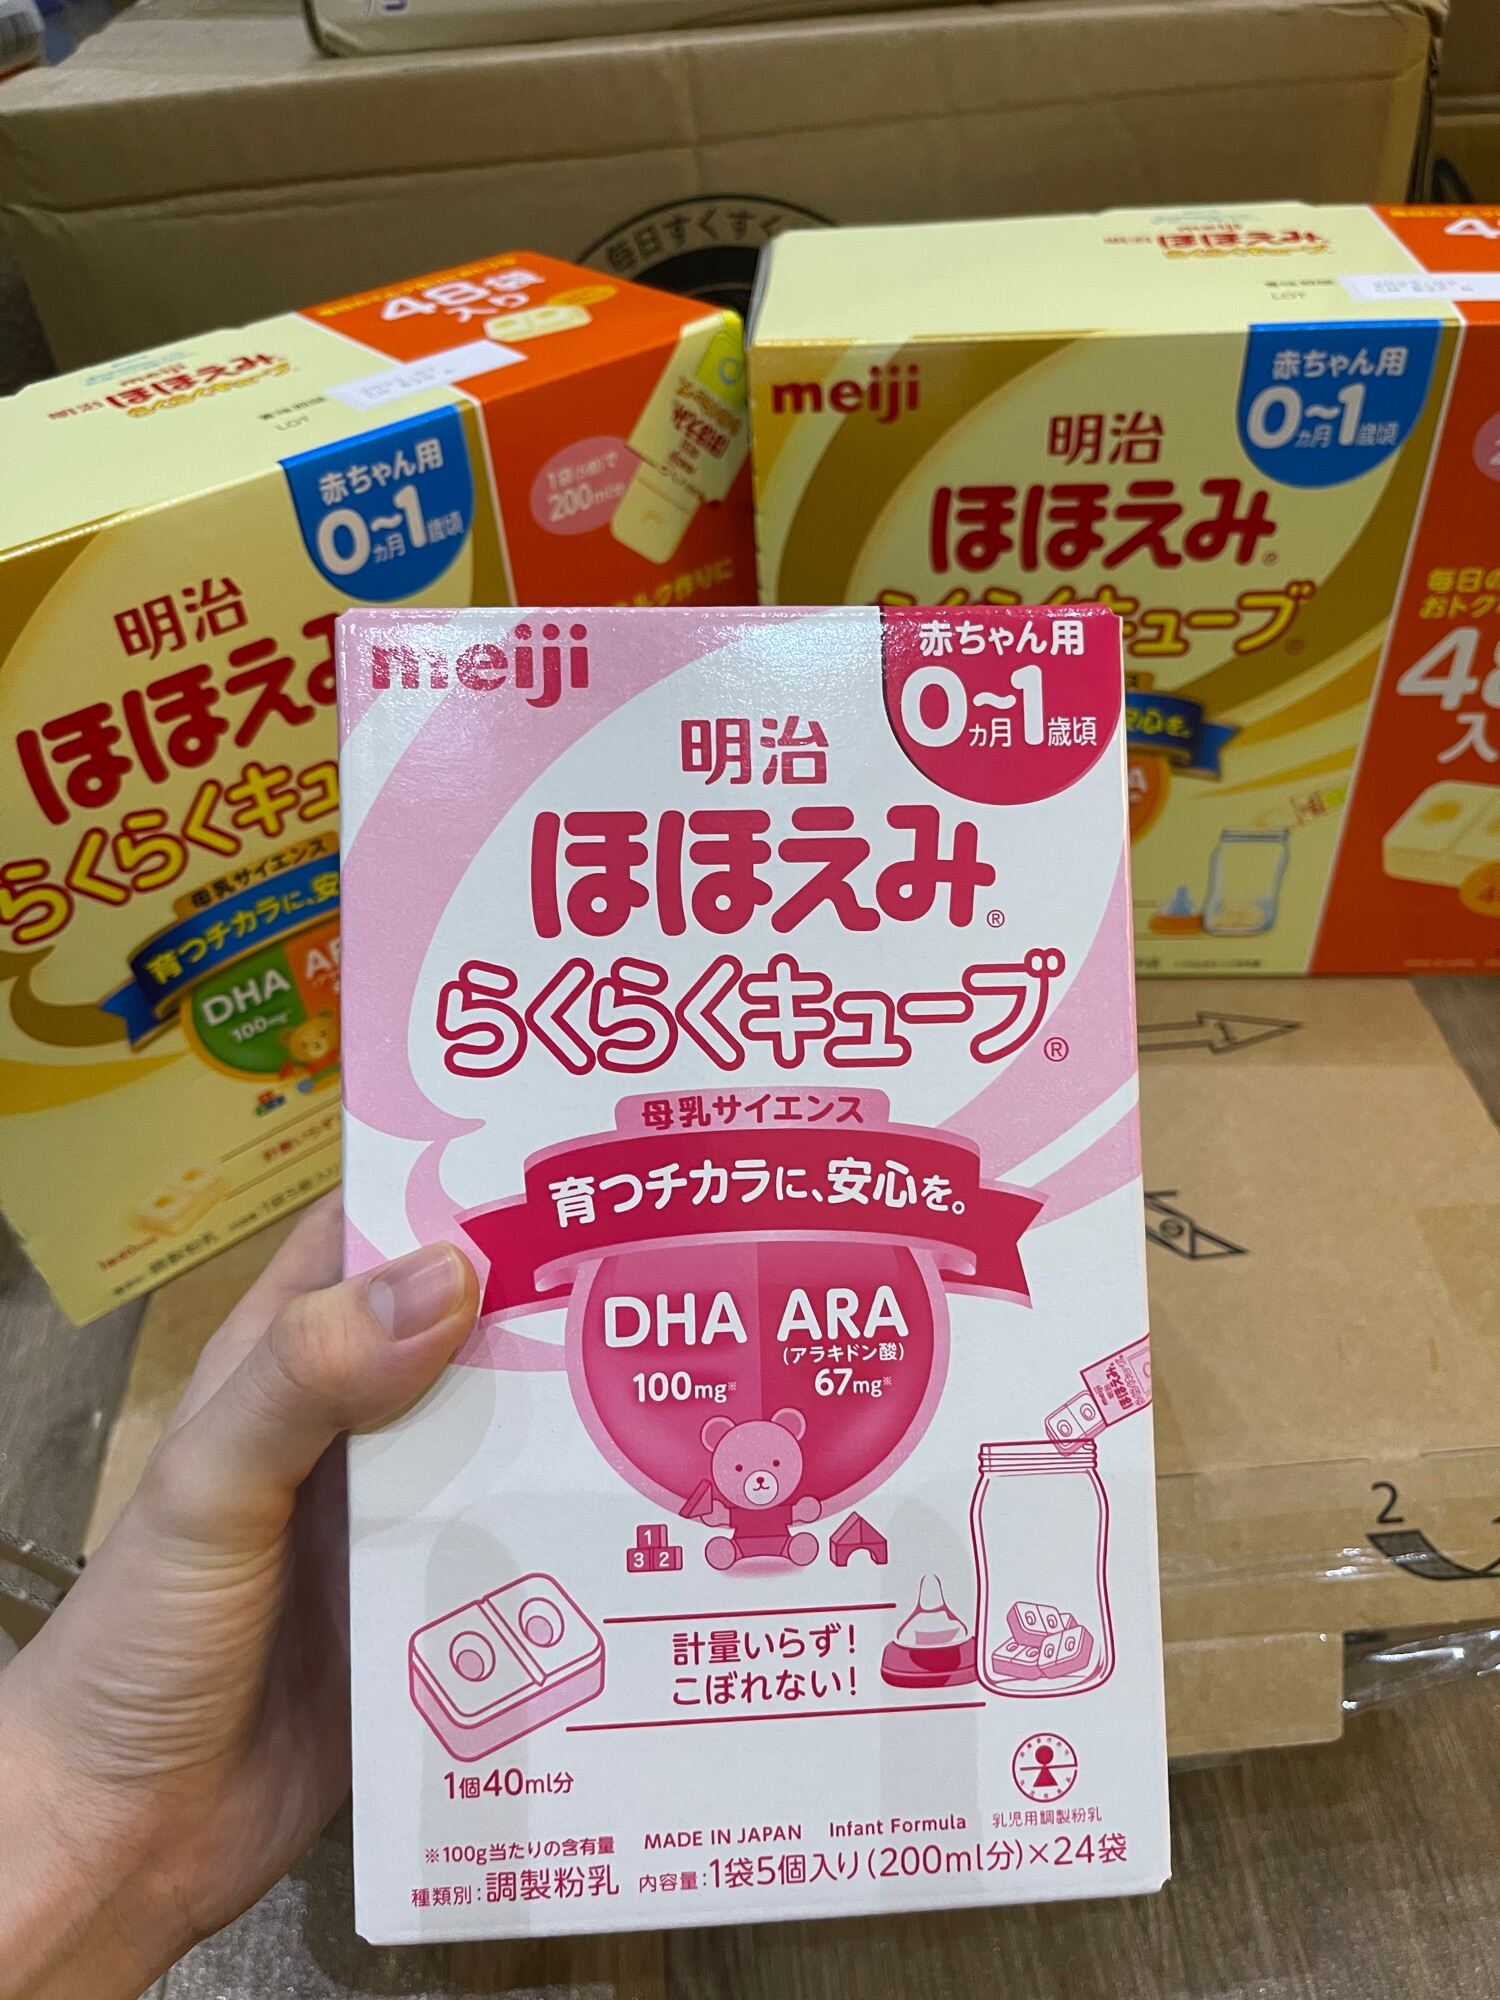 Sữa meiji nhật nội địa dạng thanh cho bé từ 0-1 tuổi - ảnh sản phẩm 1